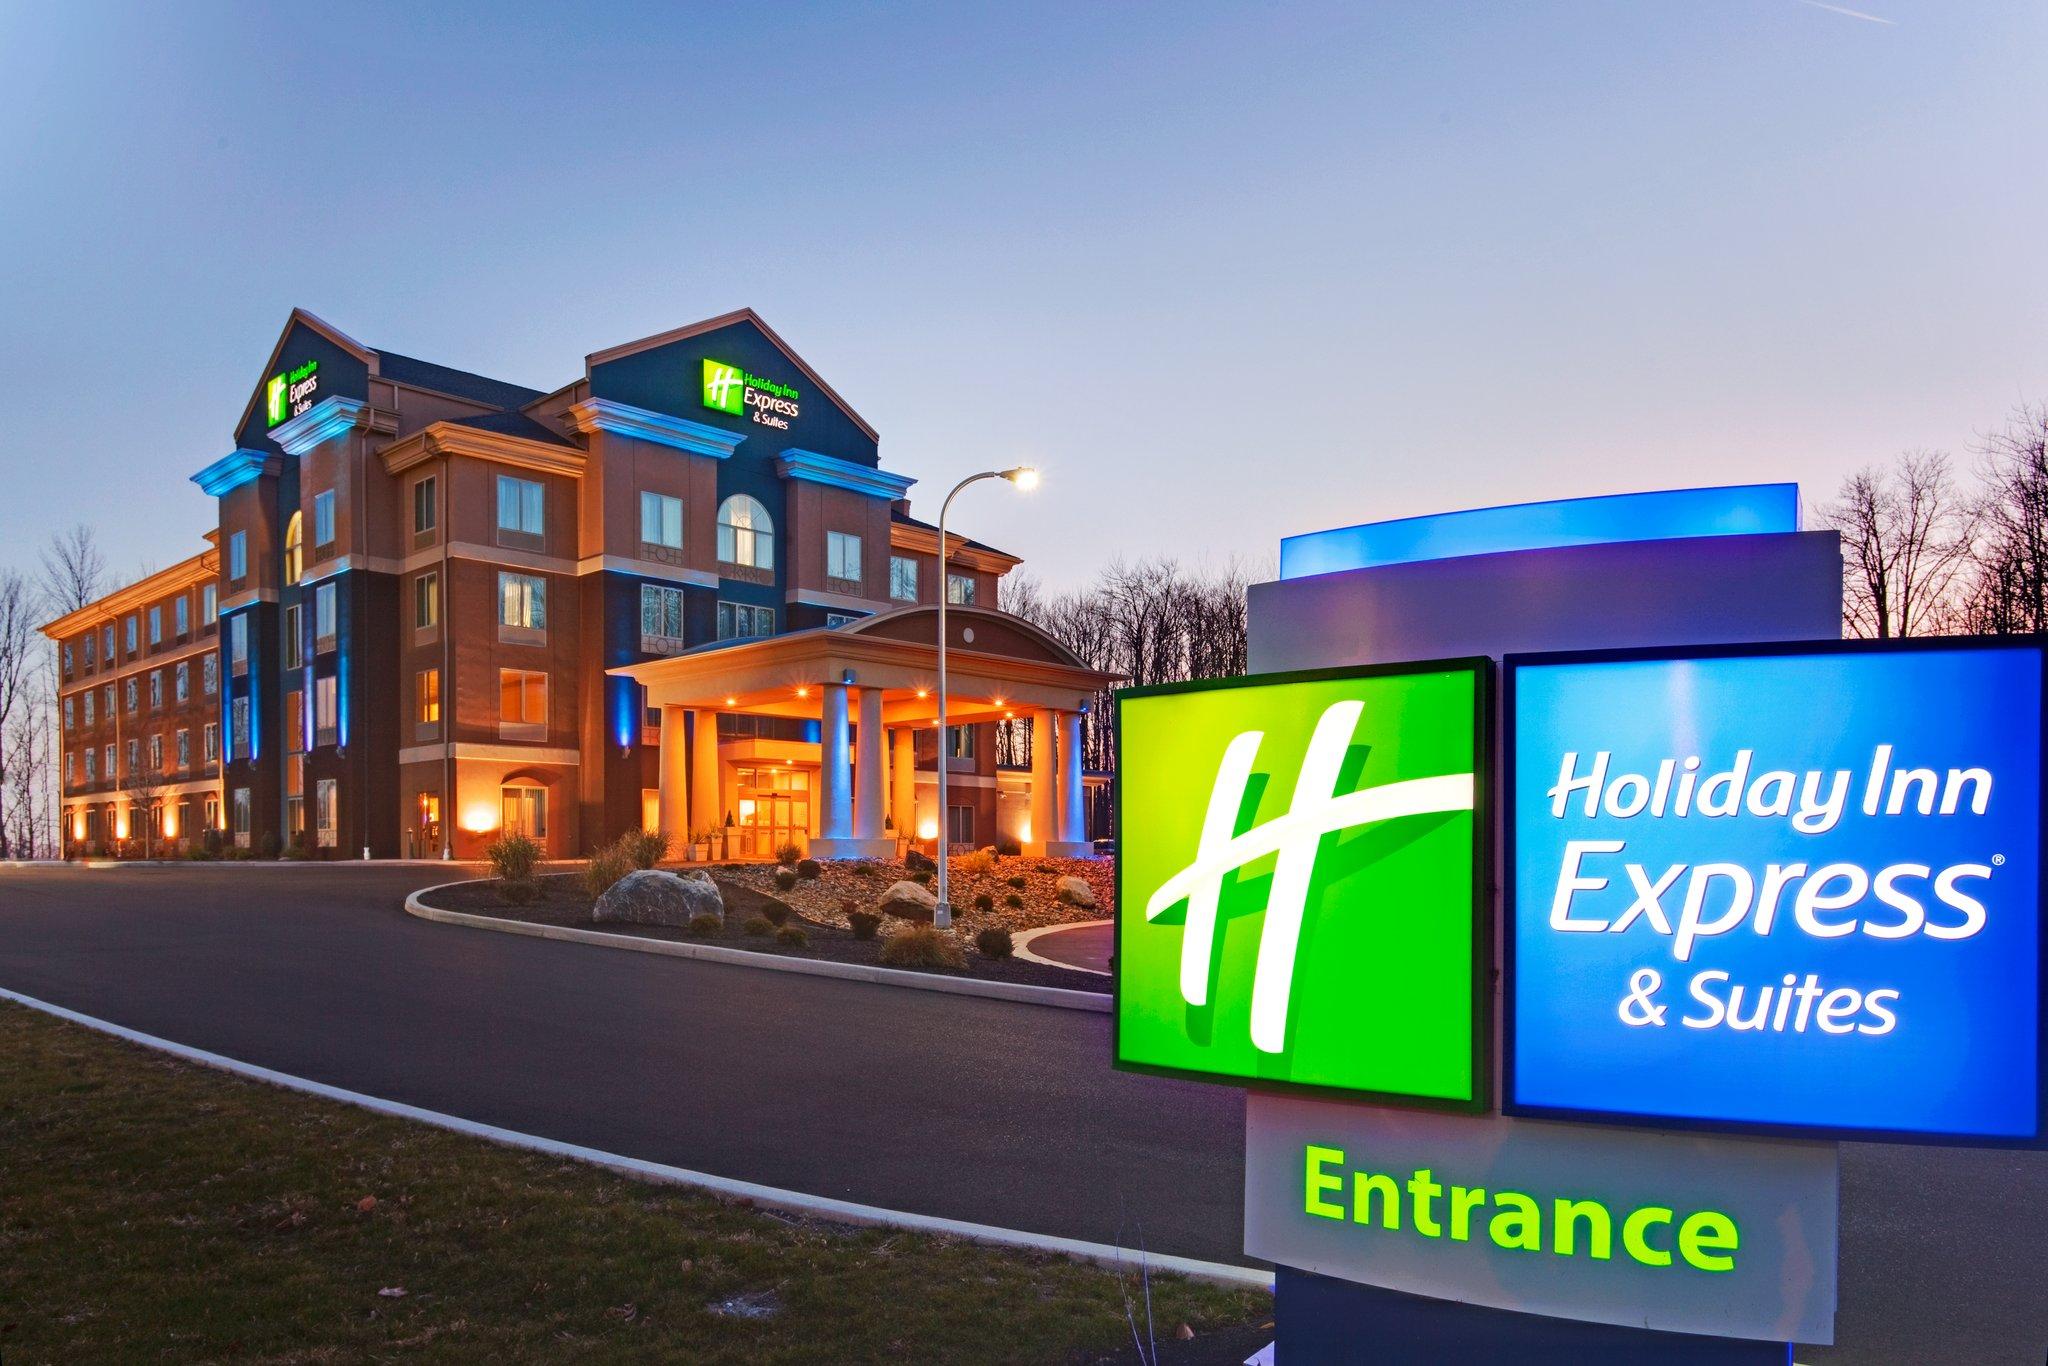 Holiday Inn Express Hotel & Suites Hamburg in Hamburg, NY